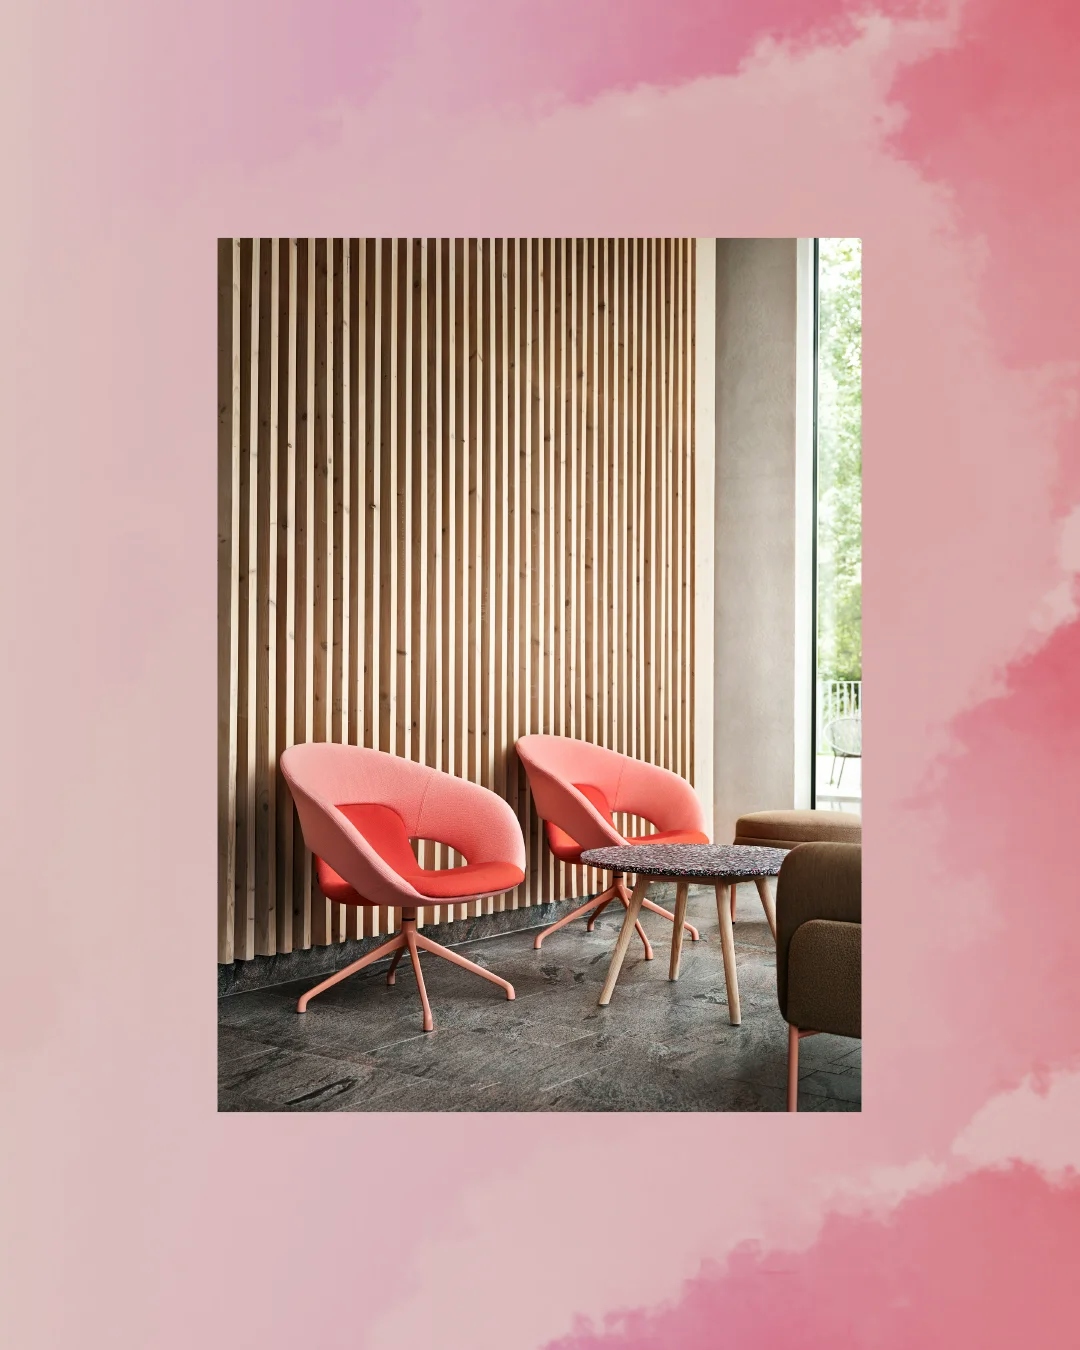 Två ljusrosa mjuka stolar framför en vägg gjord av lodräta mörka plankor